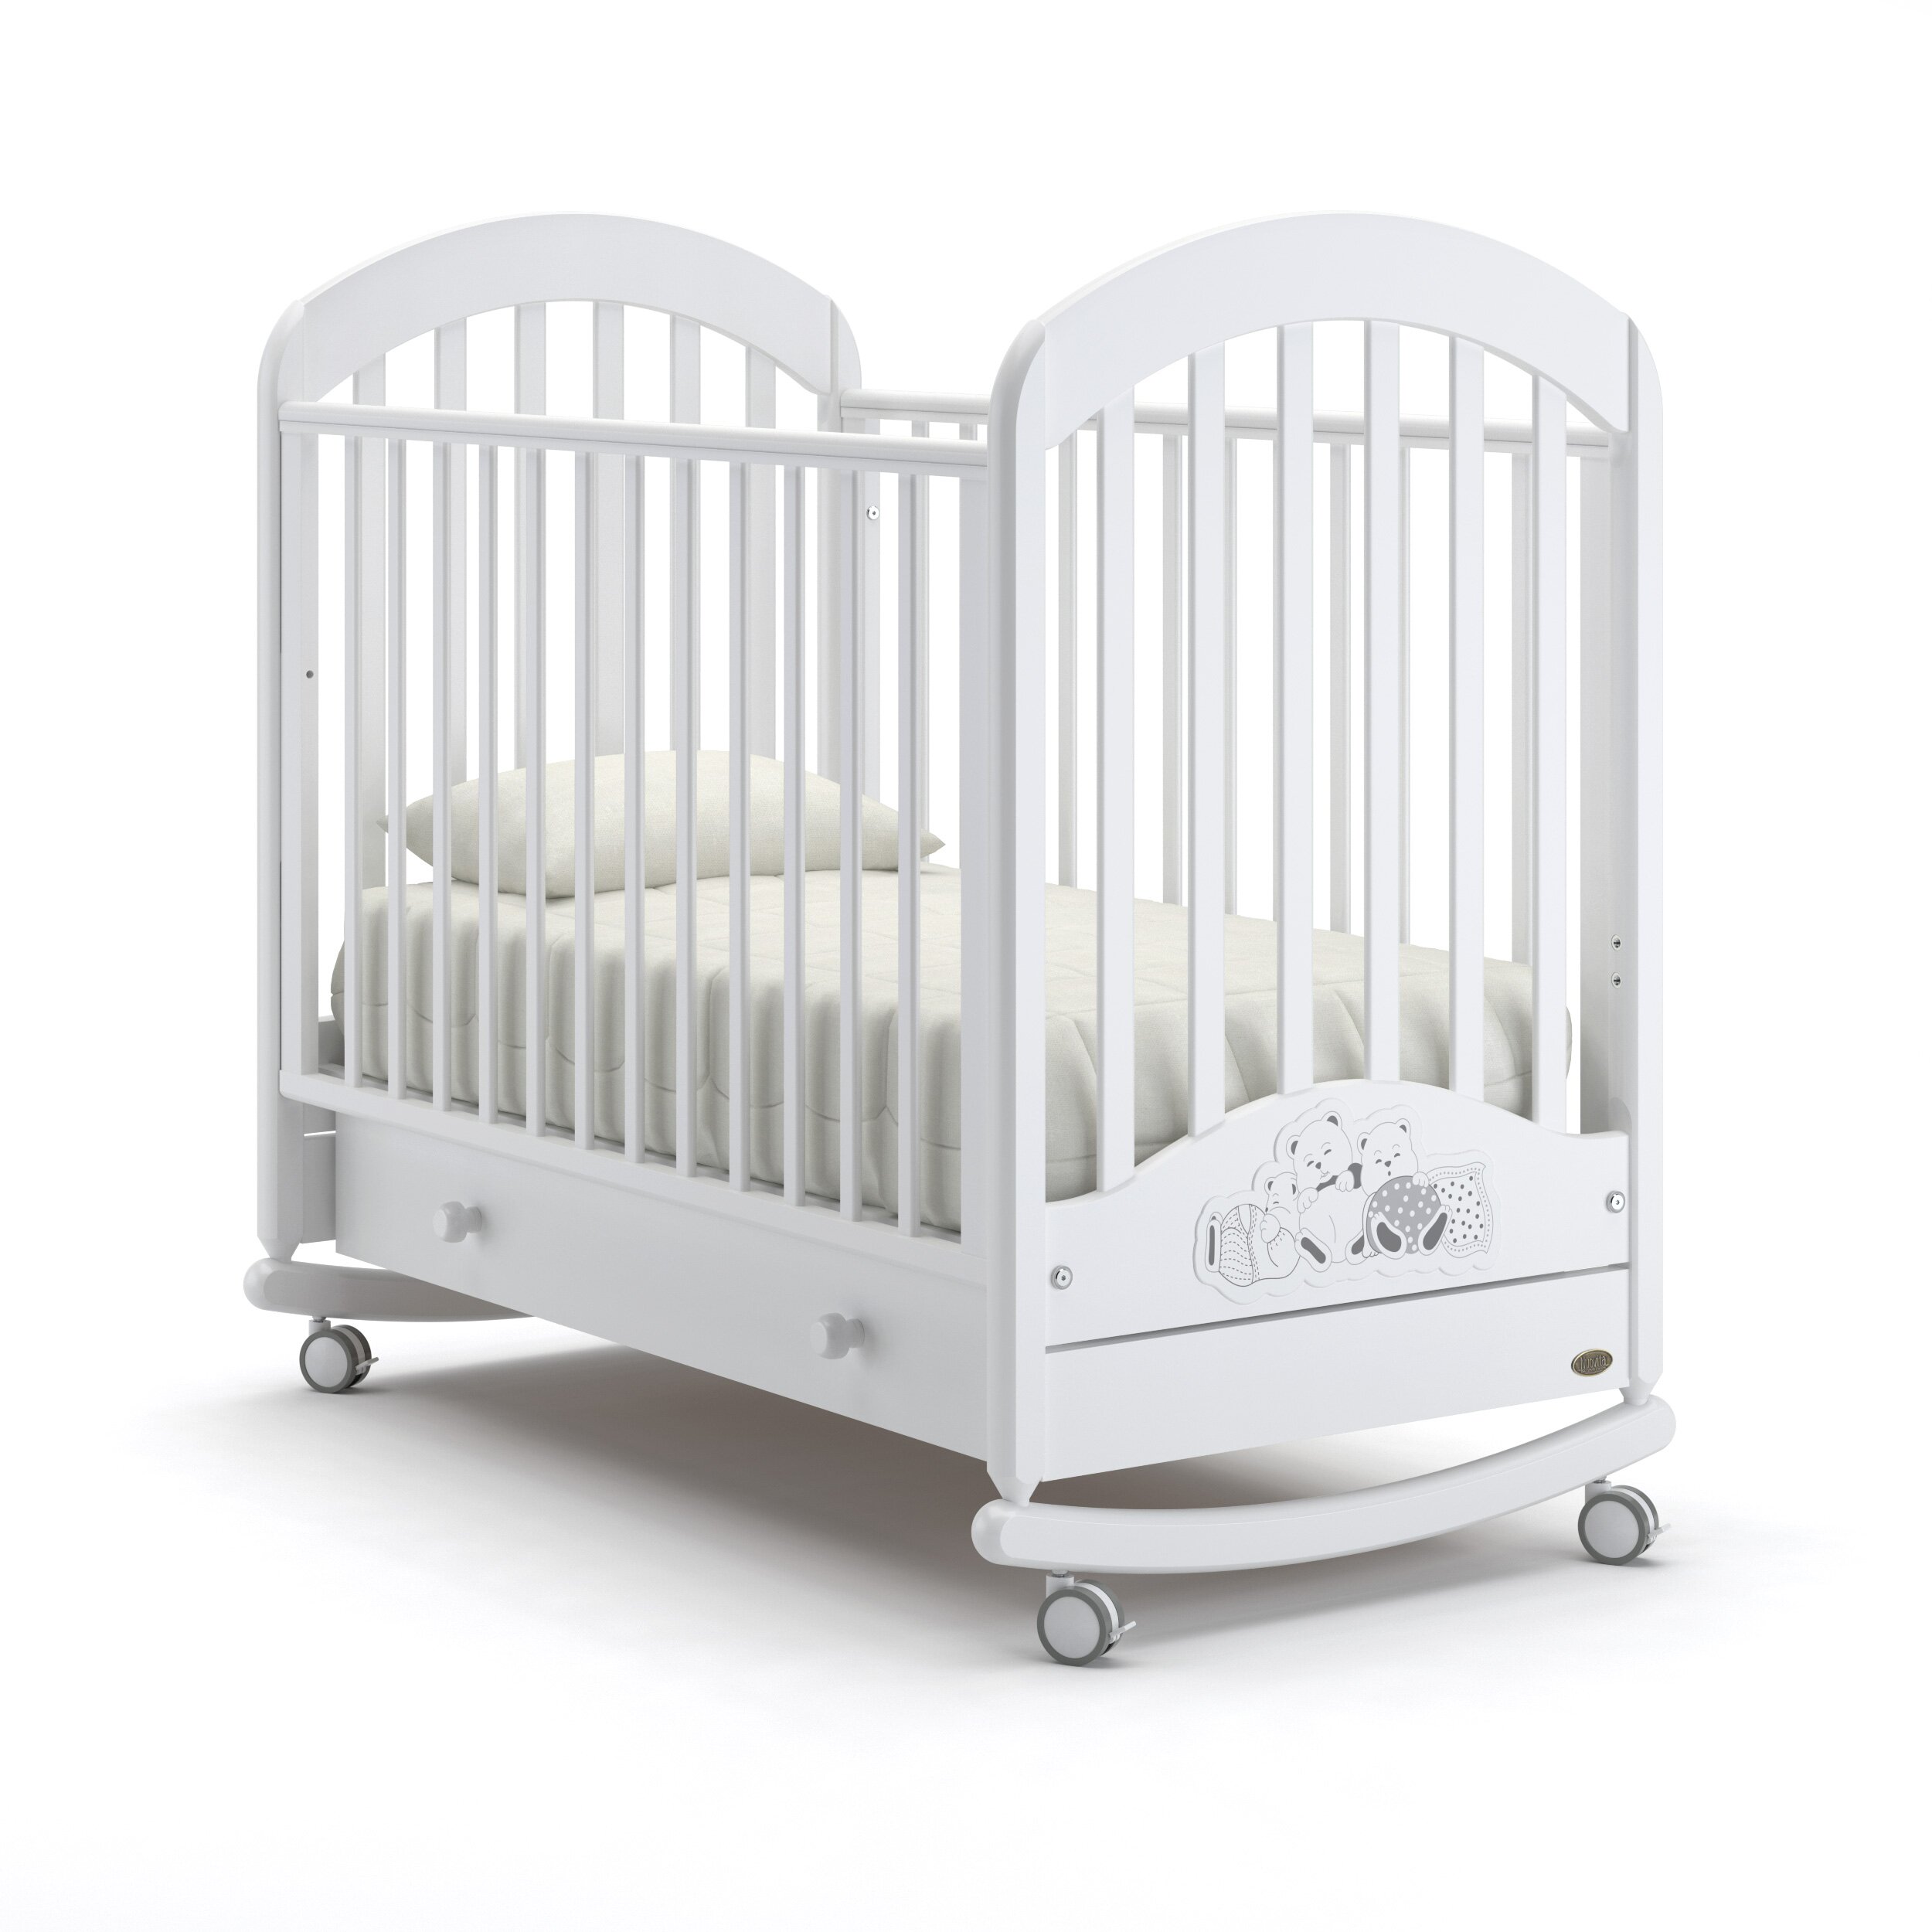 Детская кровать Nuovita Grano dondolo (качалка-колесо) Цвет: Белый